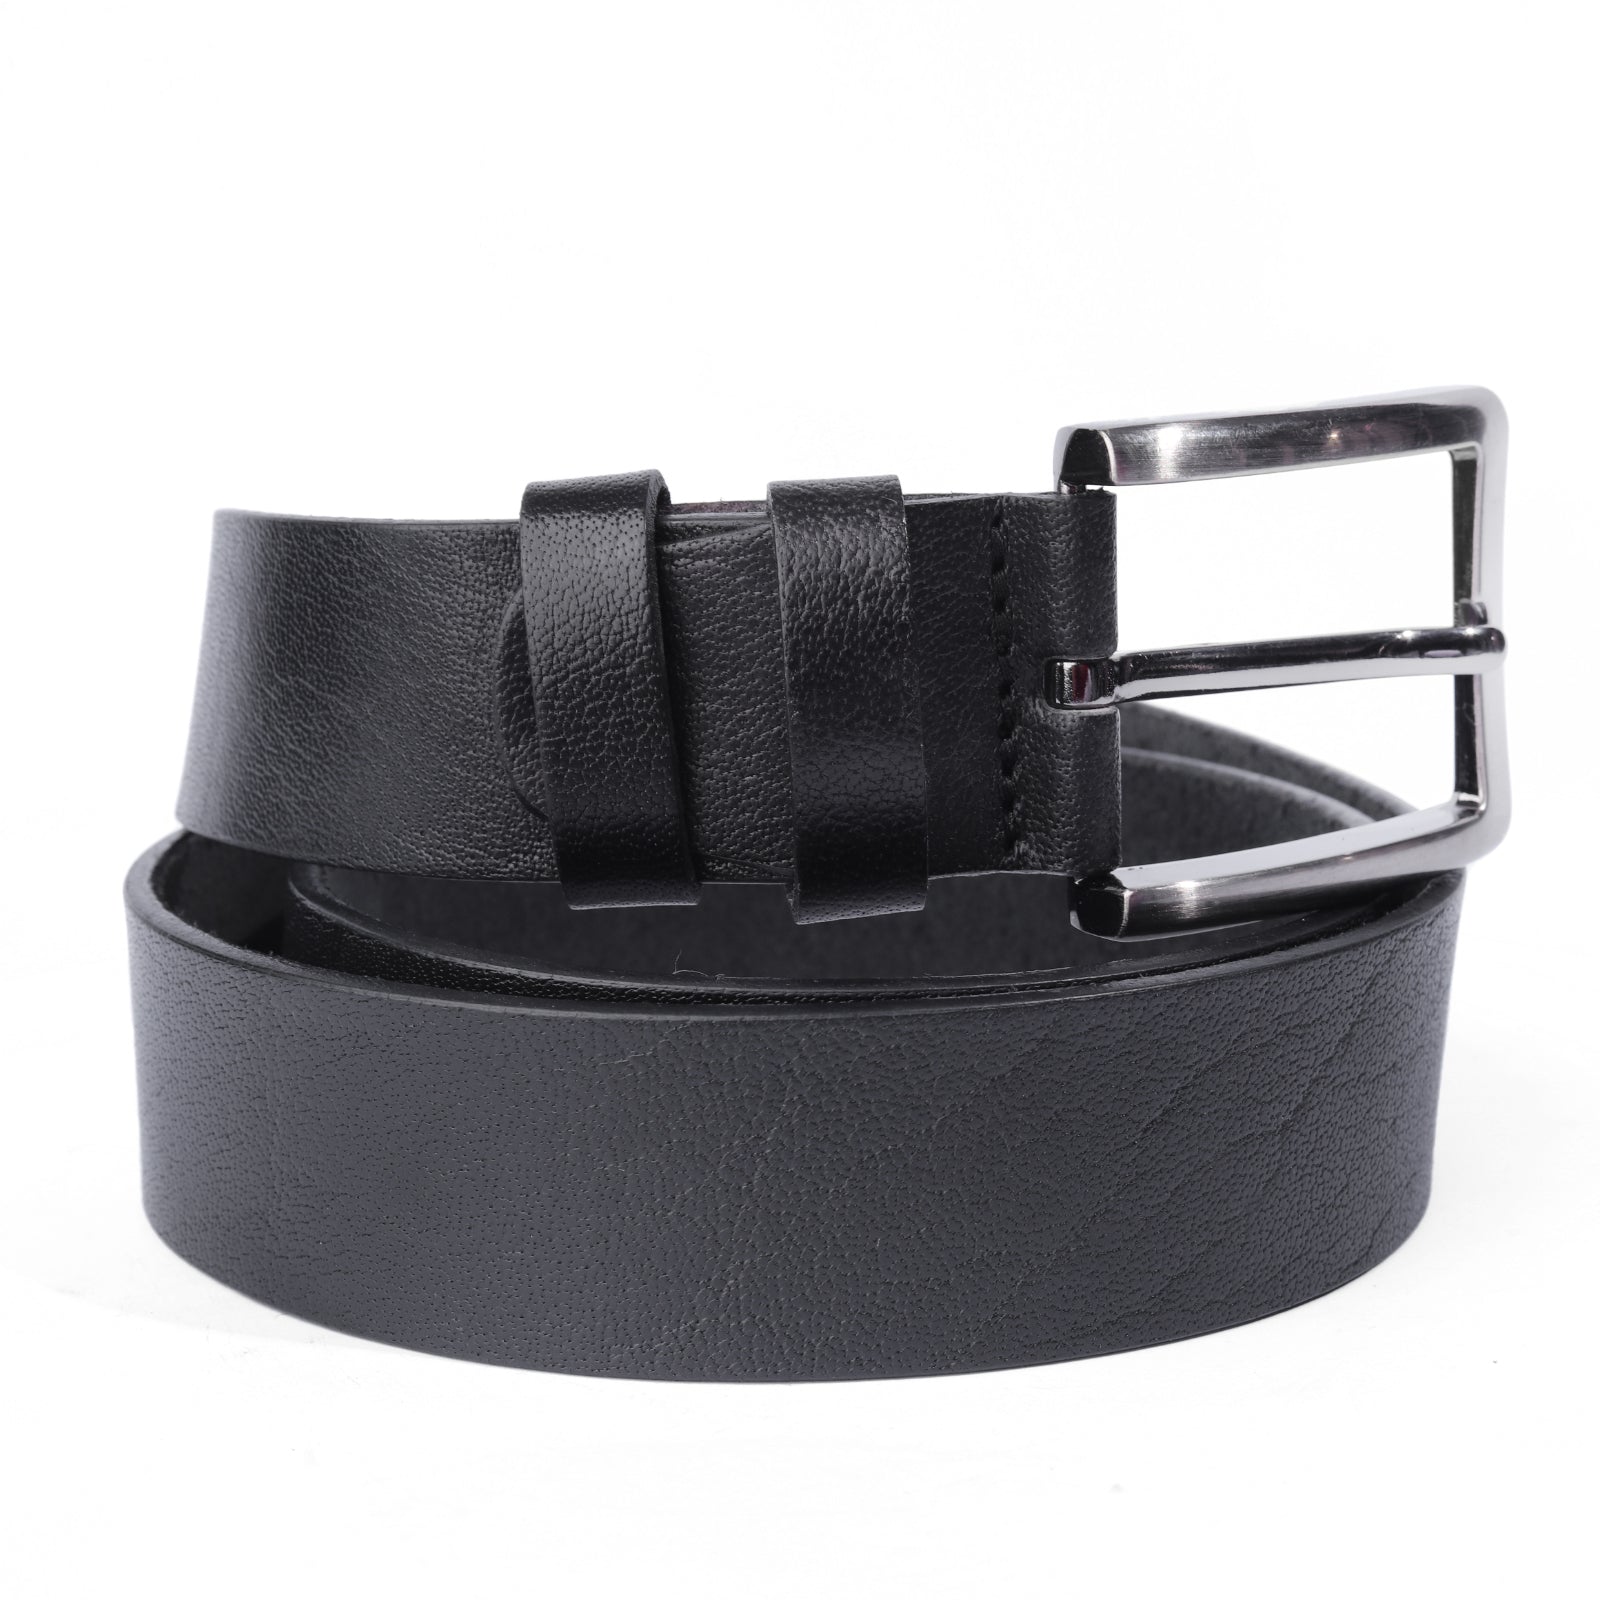 Premium Genuine Leather Belt For Men Black 4